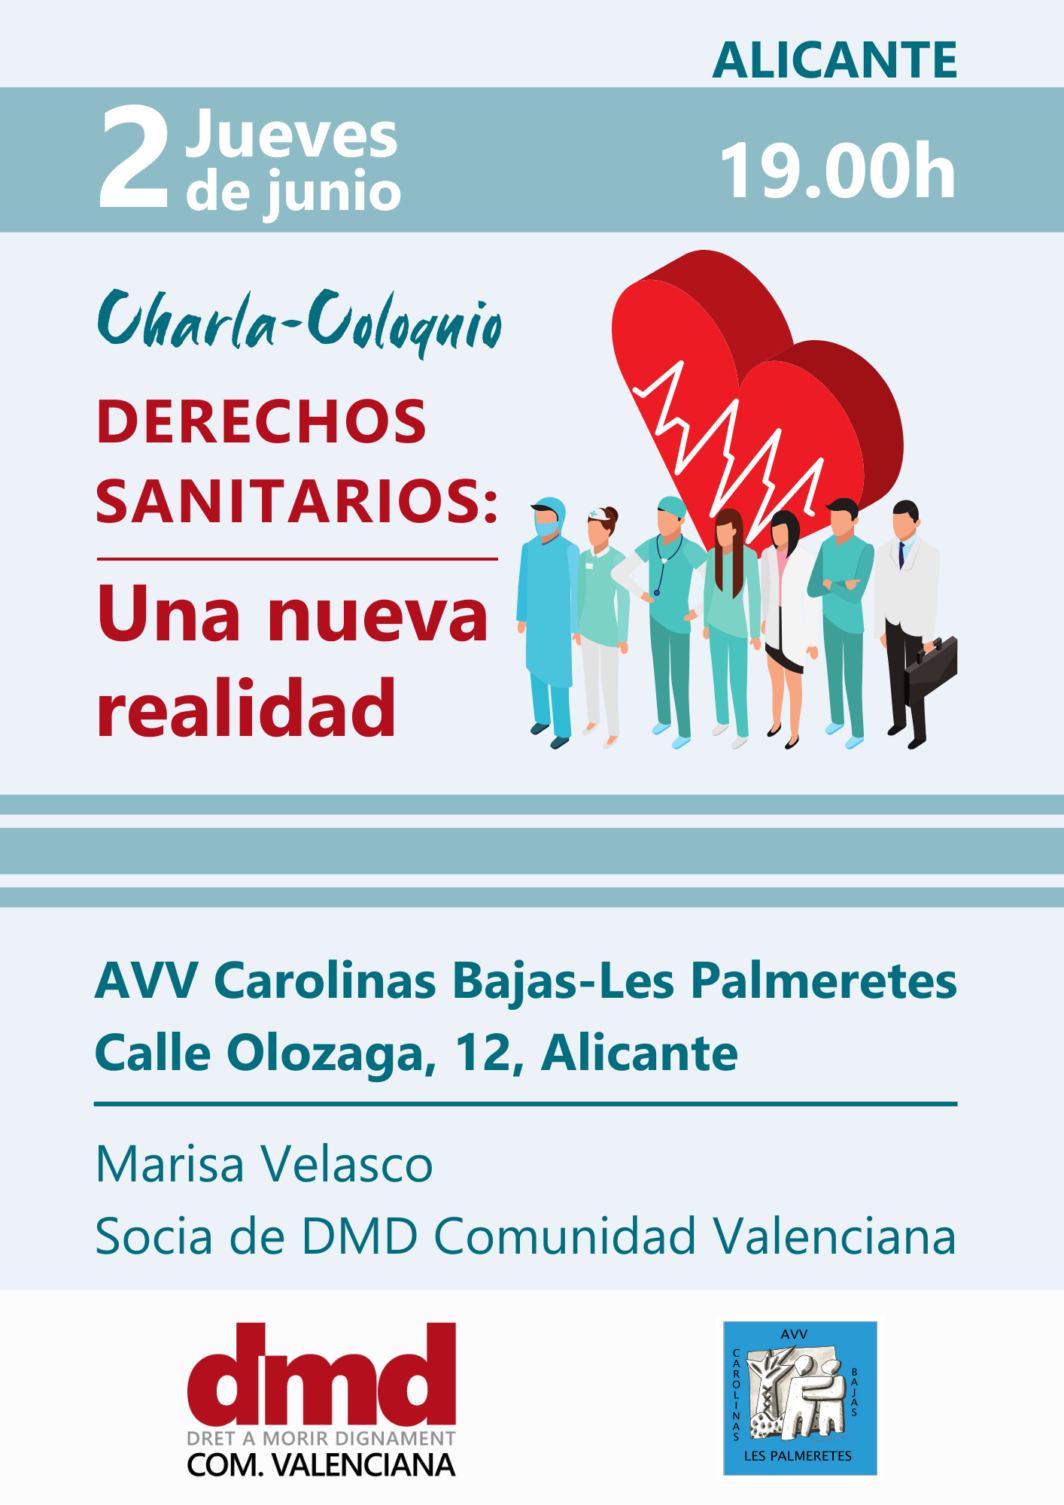 Charla sobre Derechos Sanitarios - Alicante 2 de junio